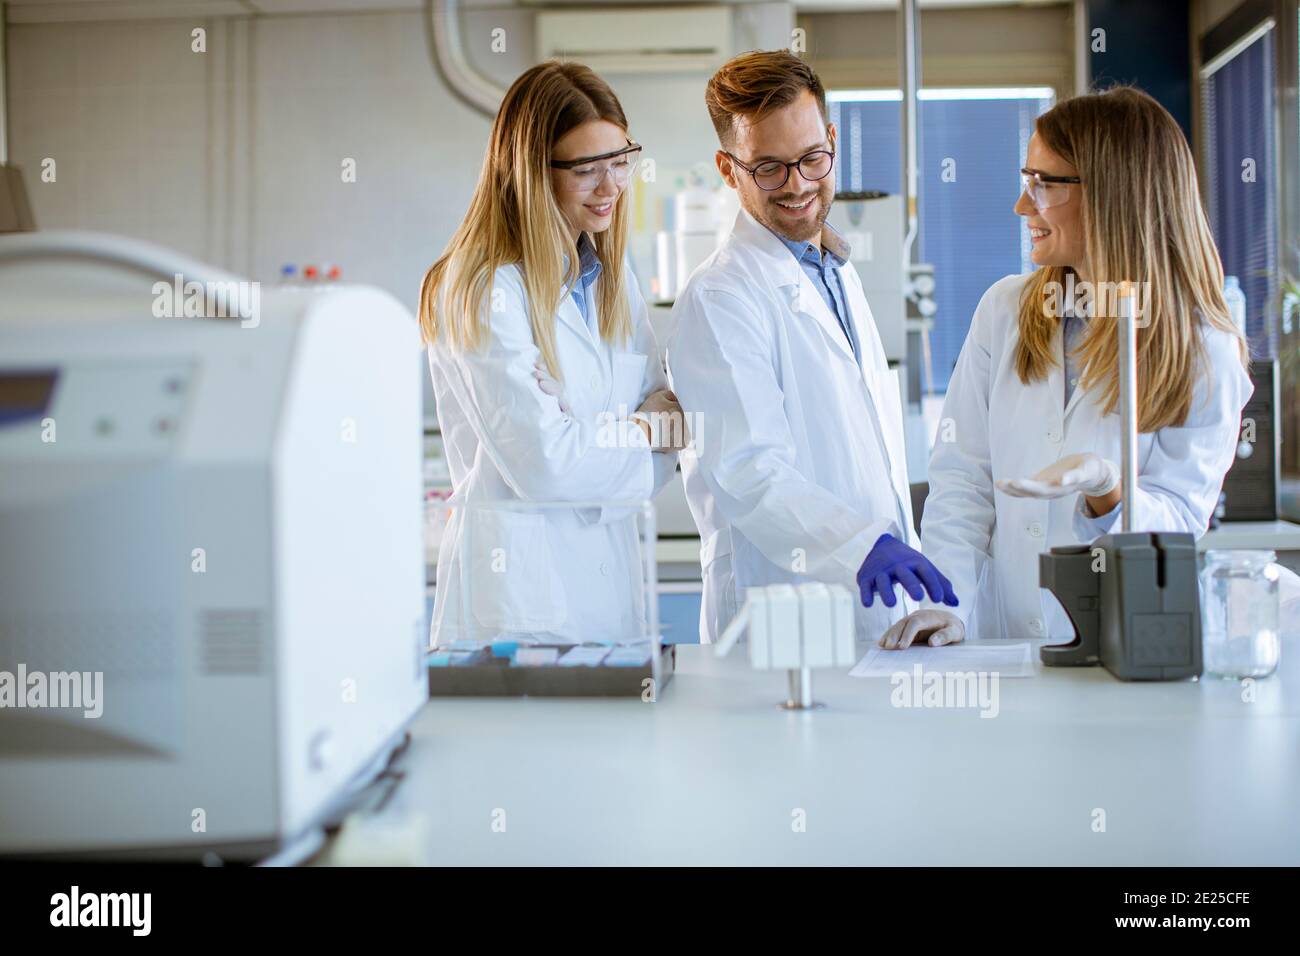 Gruppe von jungen Forschern in schützenden Arbeitskleidung stehen in der Labor und Analyse von flüssigen Proben an Ionenchromatographie-Geräten Stockfoto